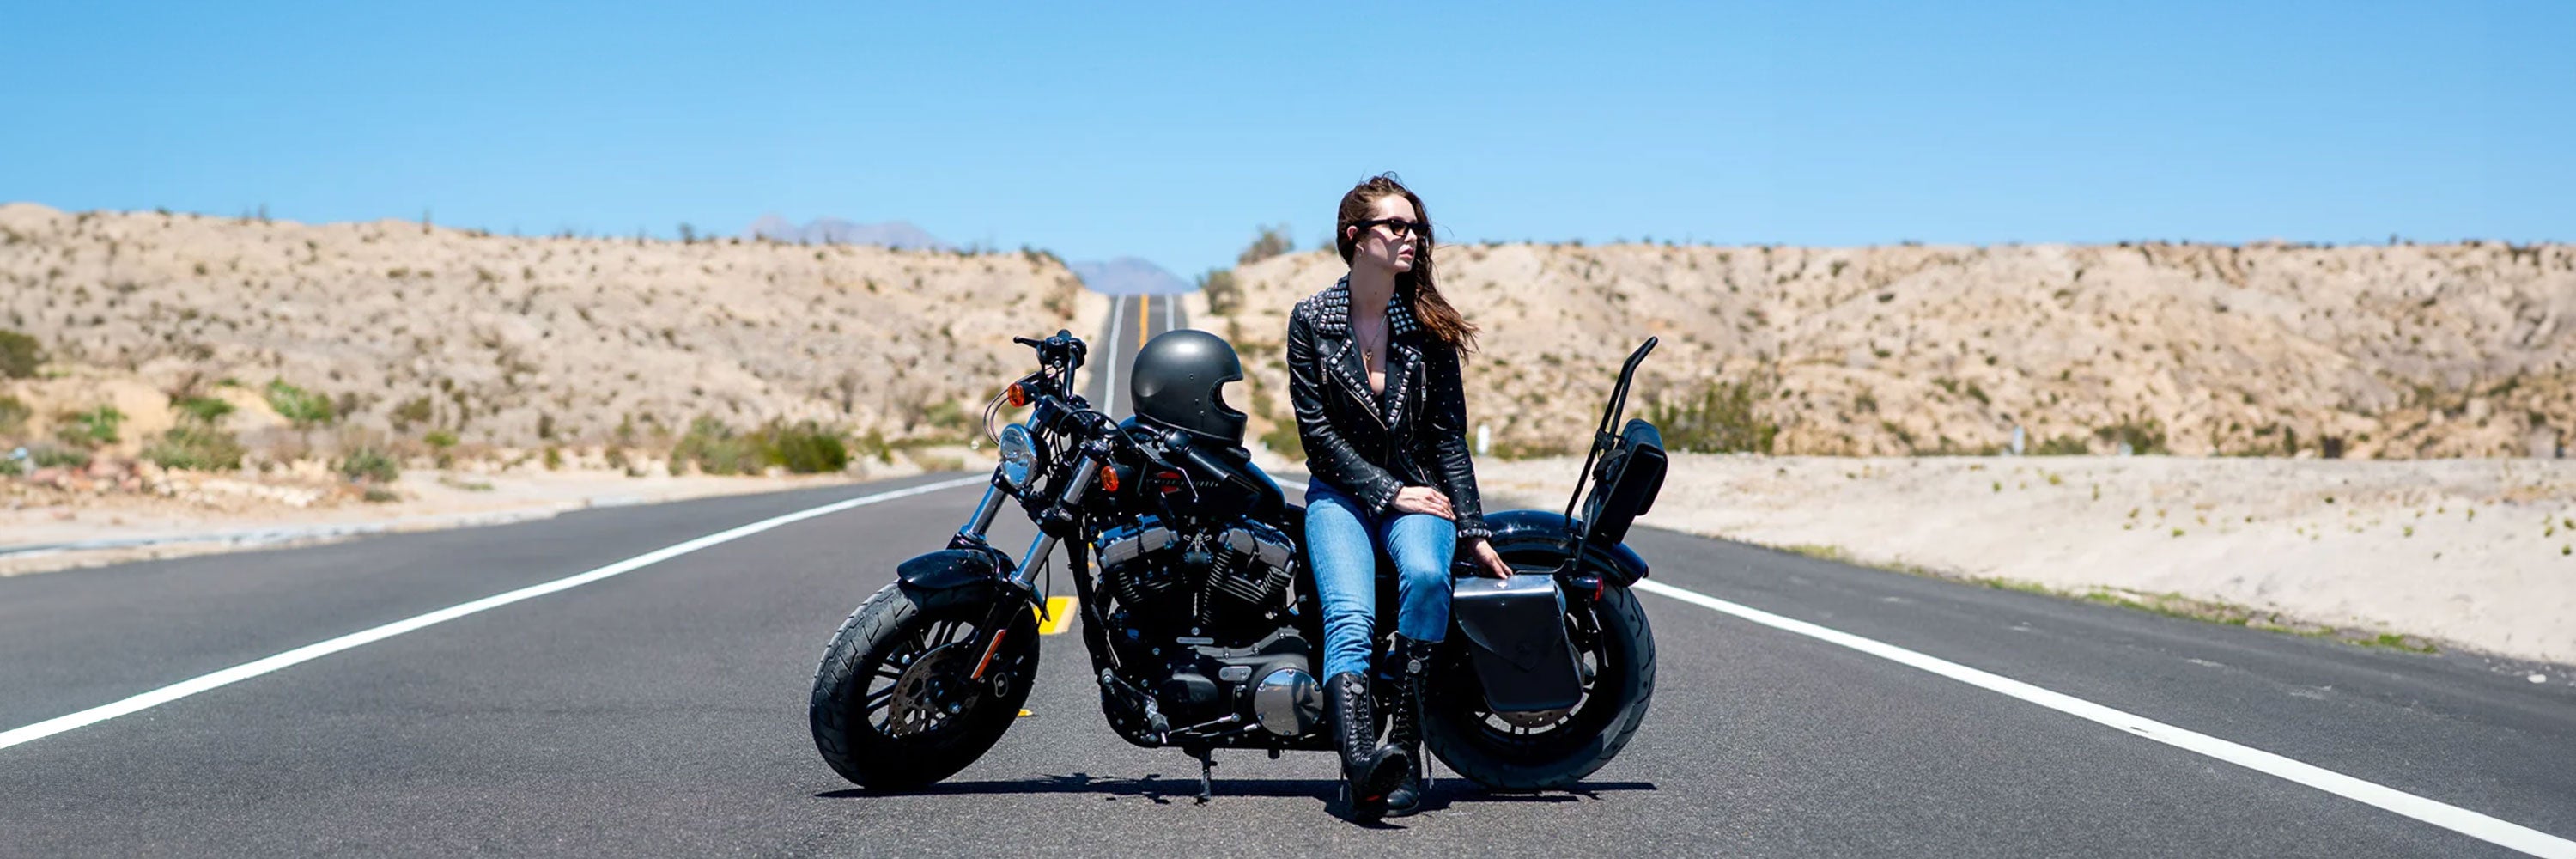 Harley Davidson Sportster Handlebars